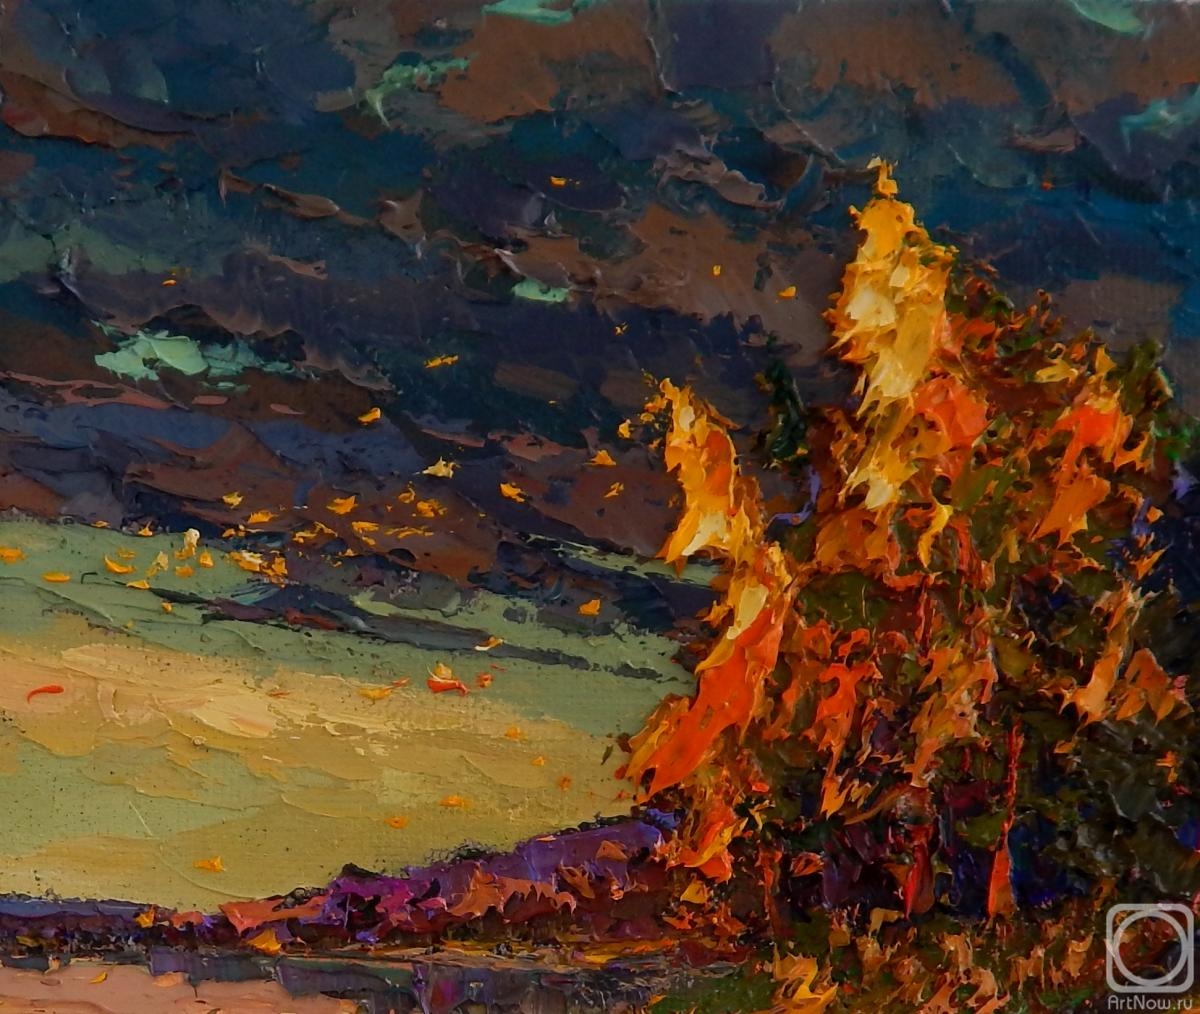 Golovchenko Alexey. Autumn evening